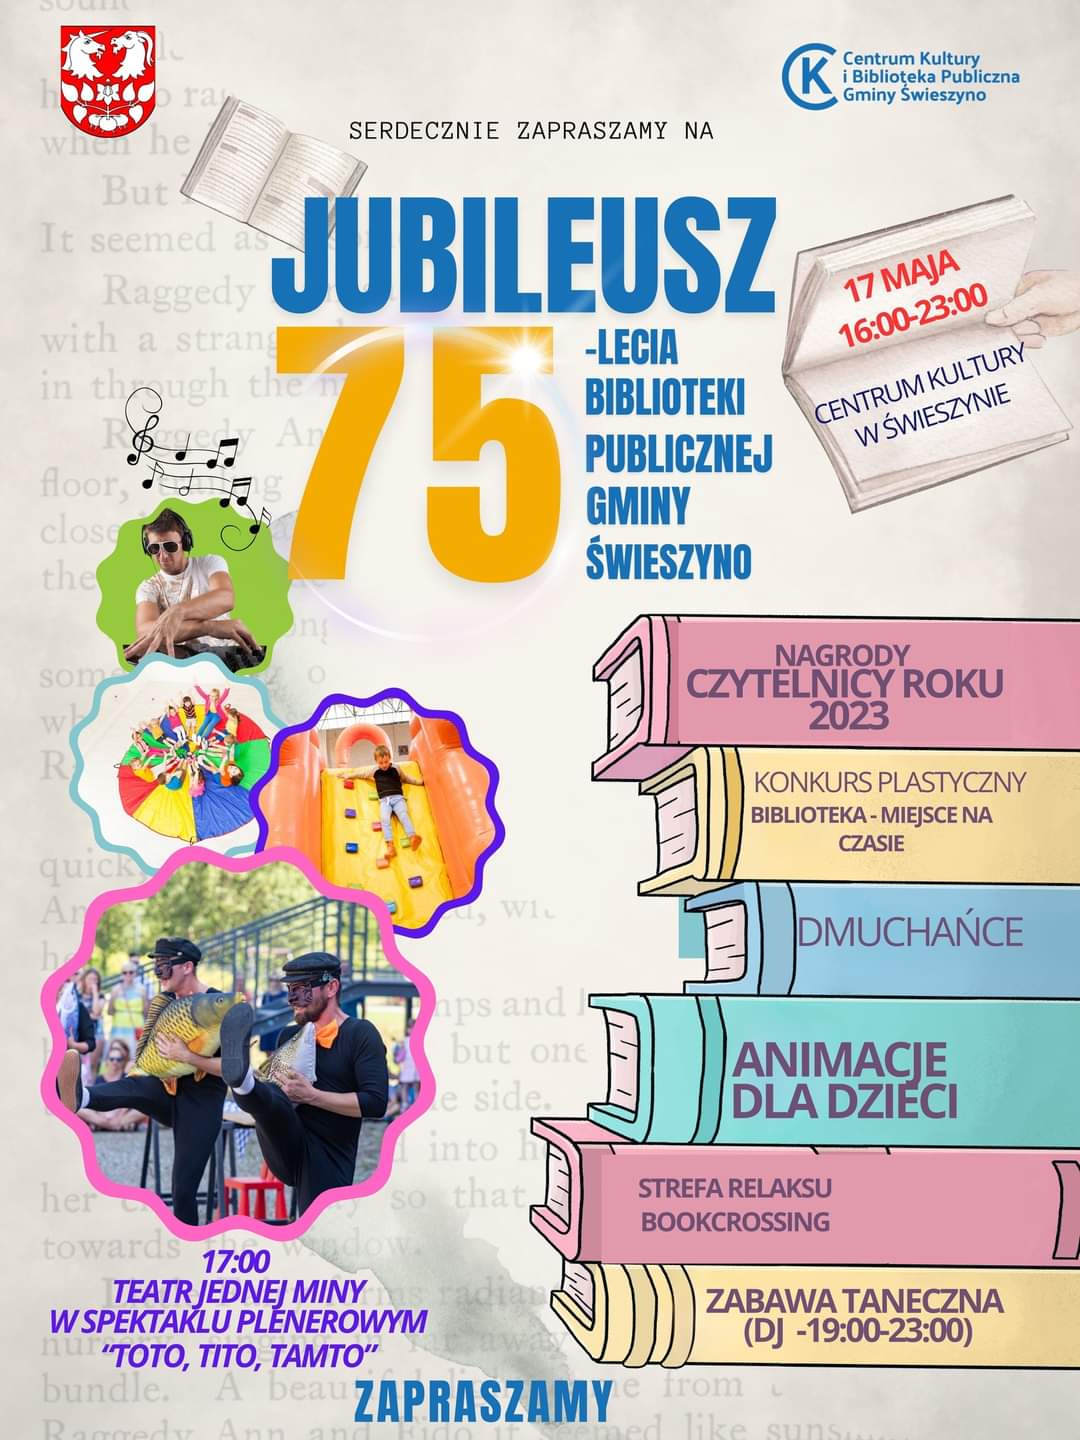 Plakat z zaproszeniem na jubileusz 75.lecia Biblioteki Publicznej Gminy Świeszyno 17 maja 2024